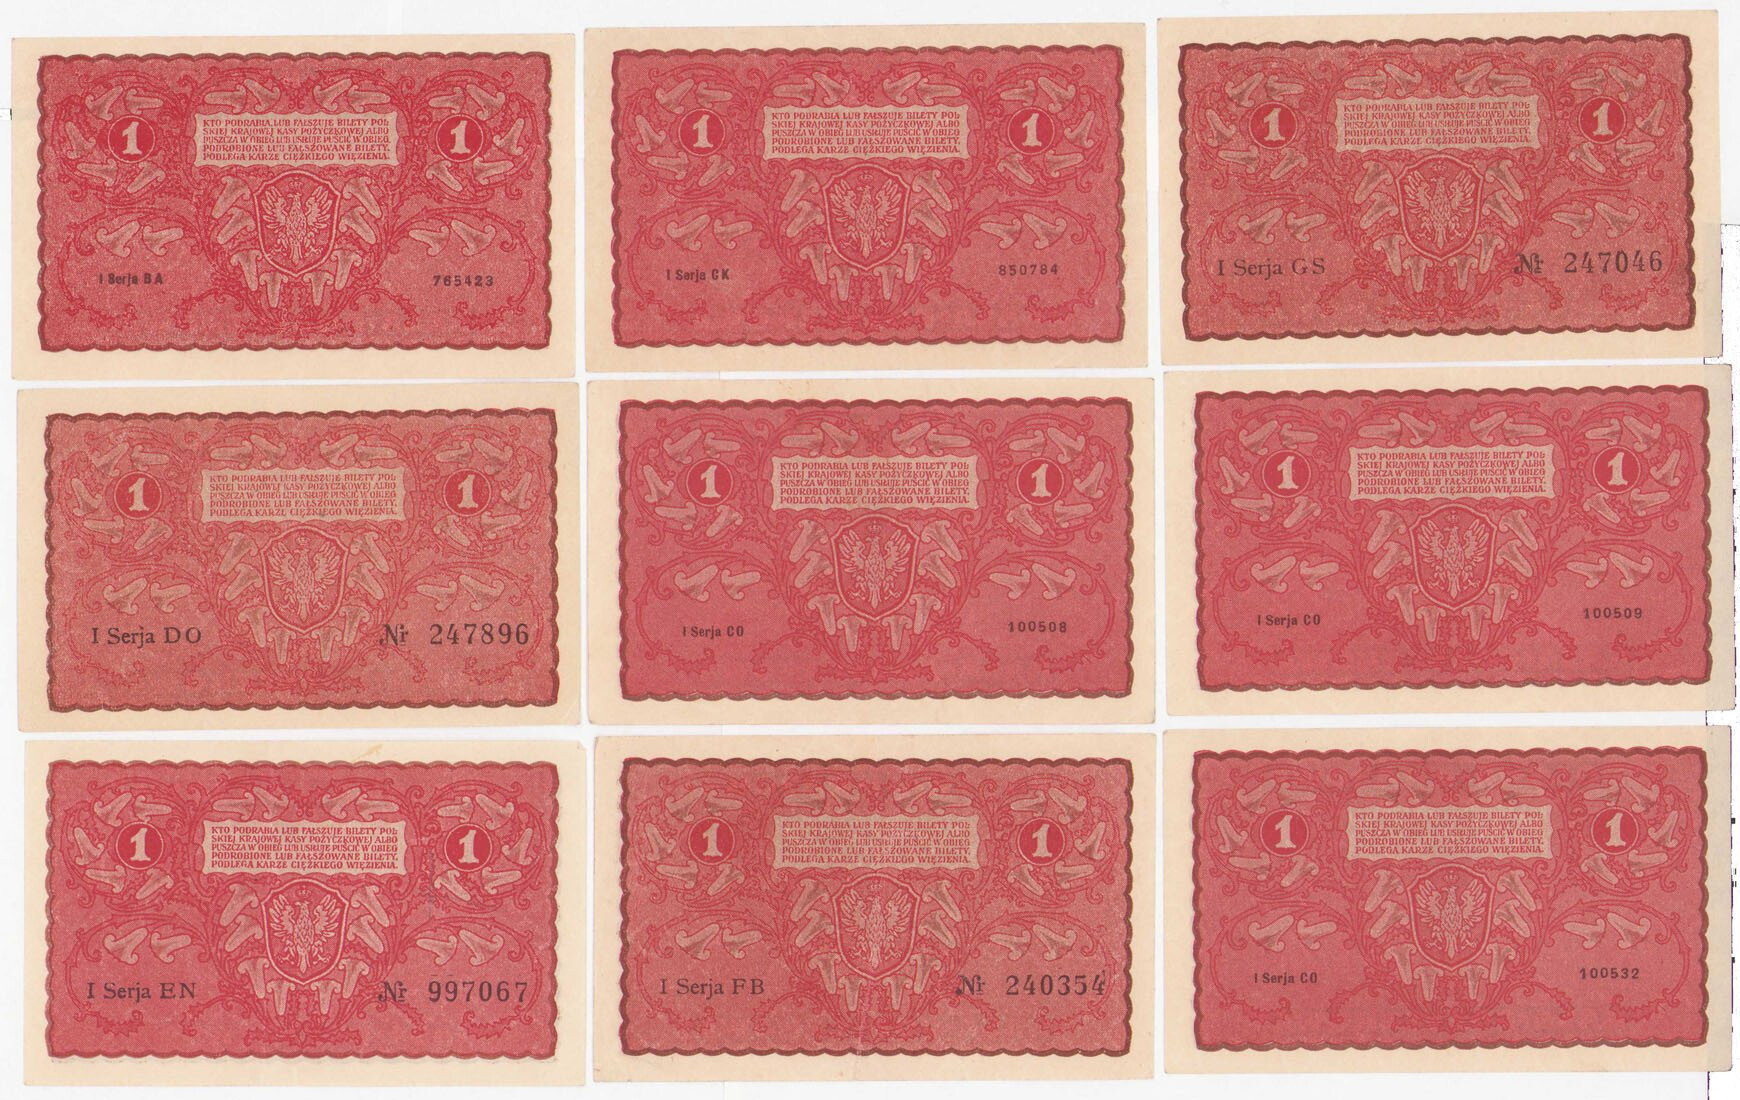 1 marka polska 1919 – zestaw 9 banknotów